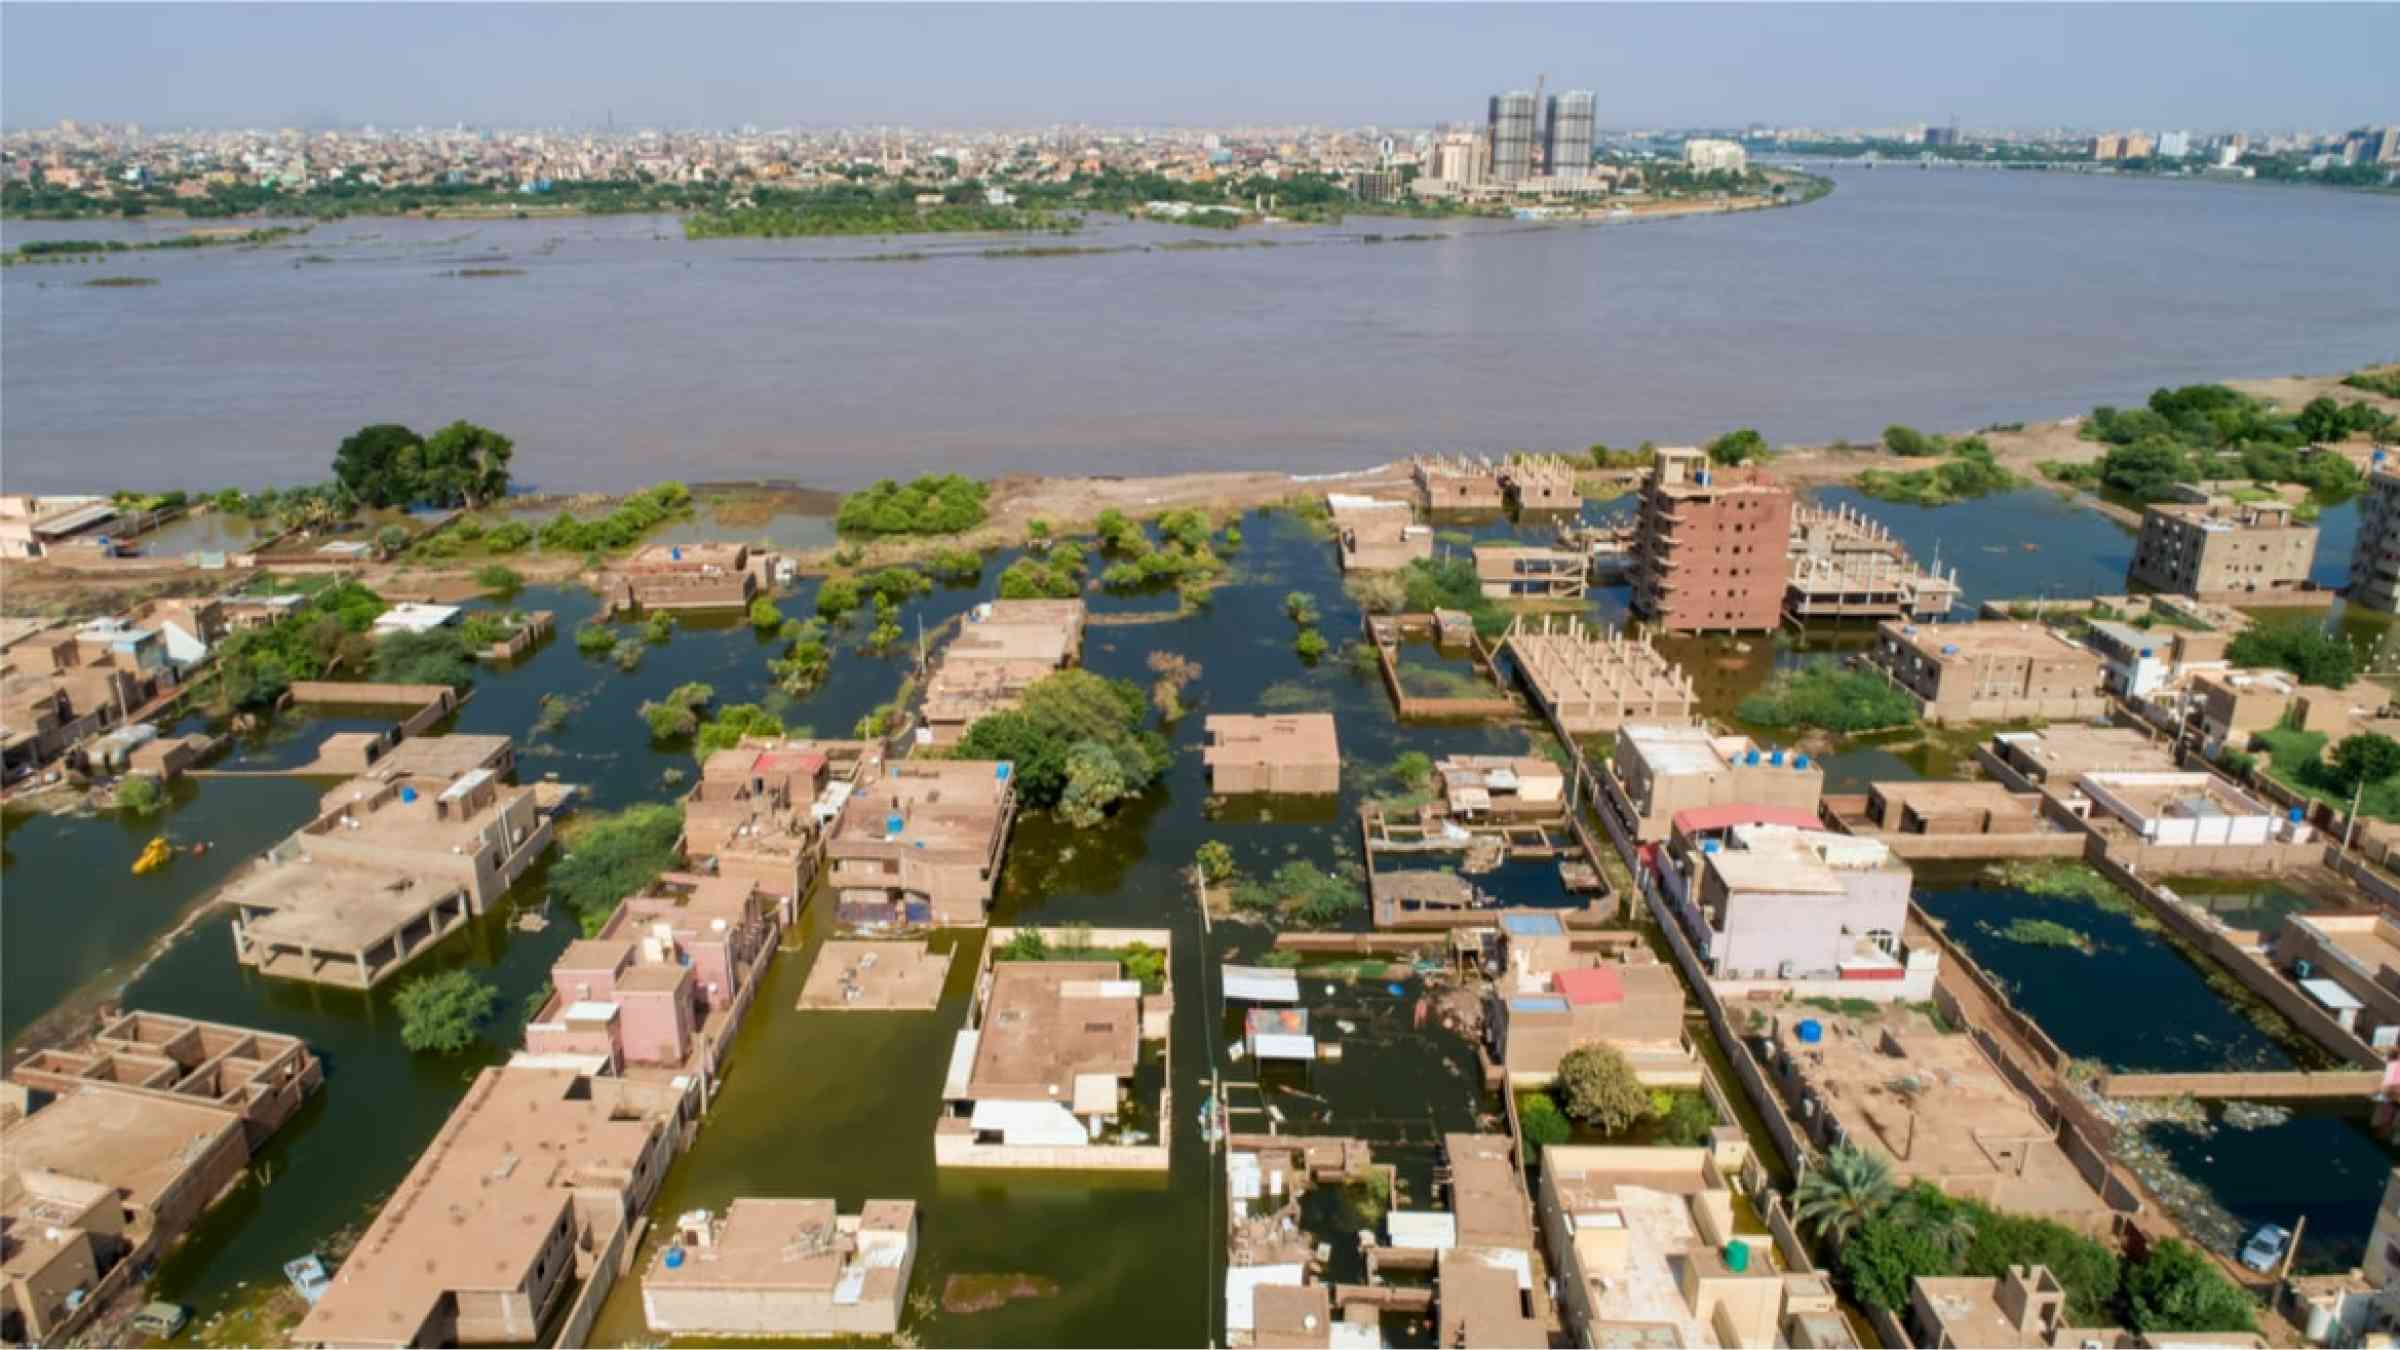 The city of Khartoum, Sudan flooded in 2020